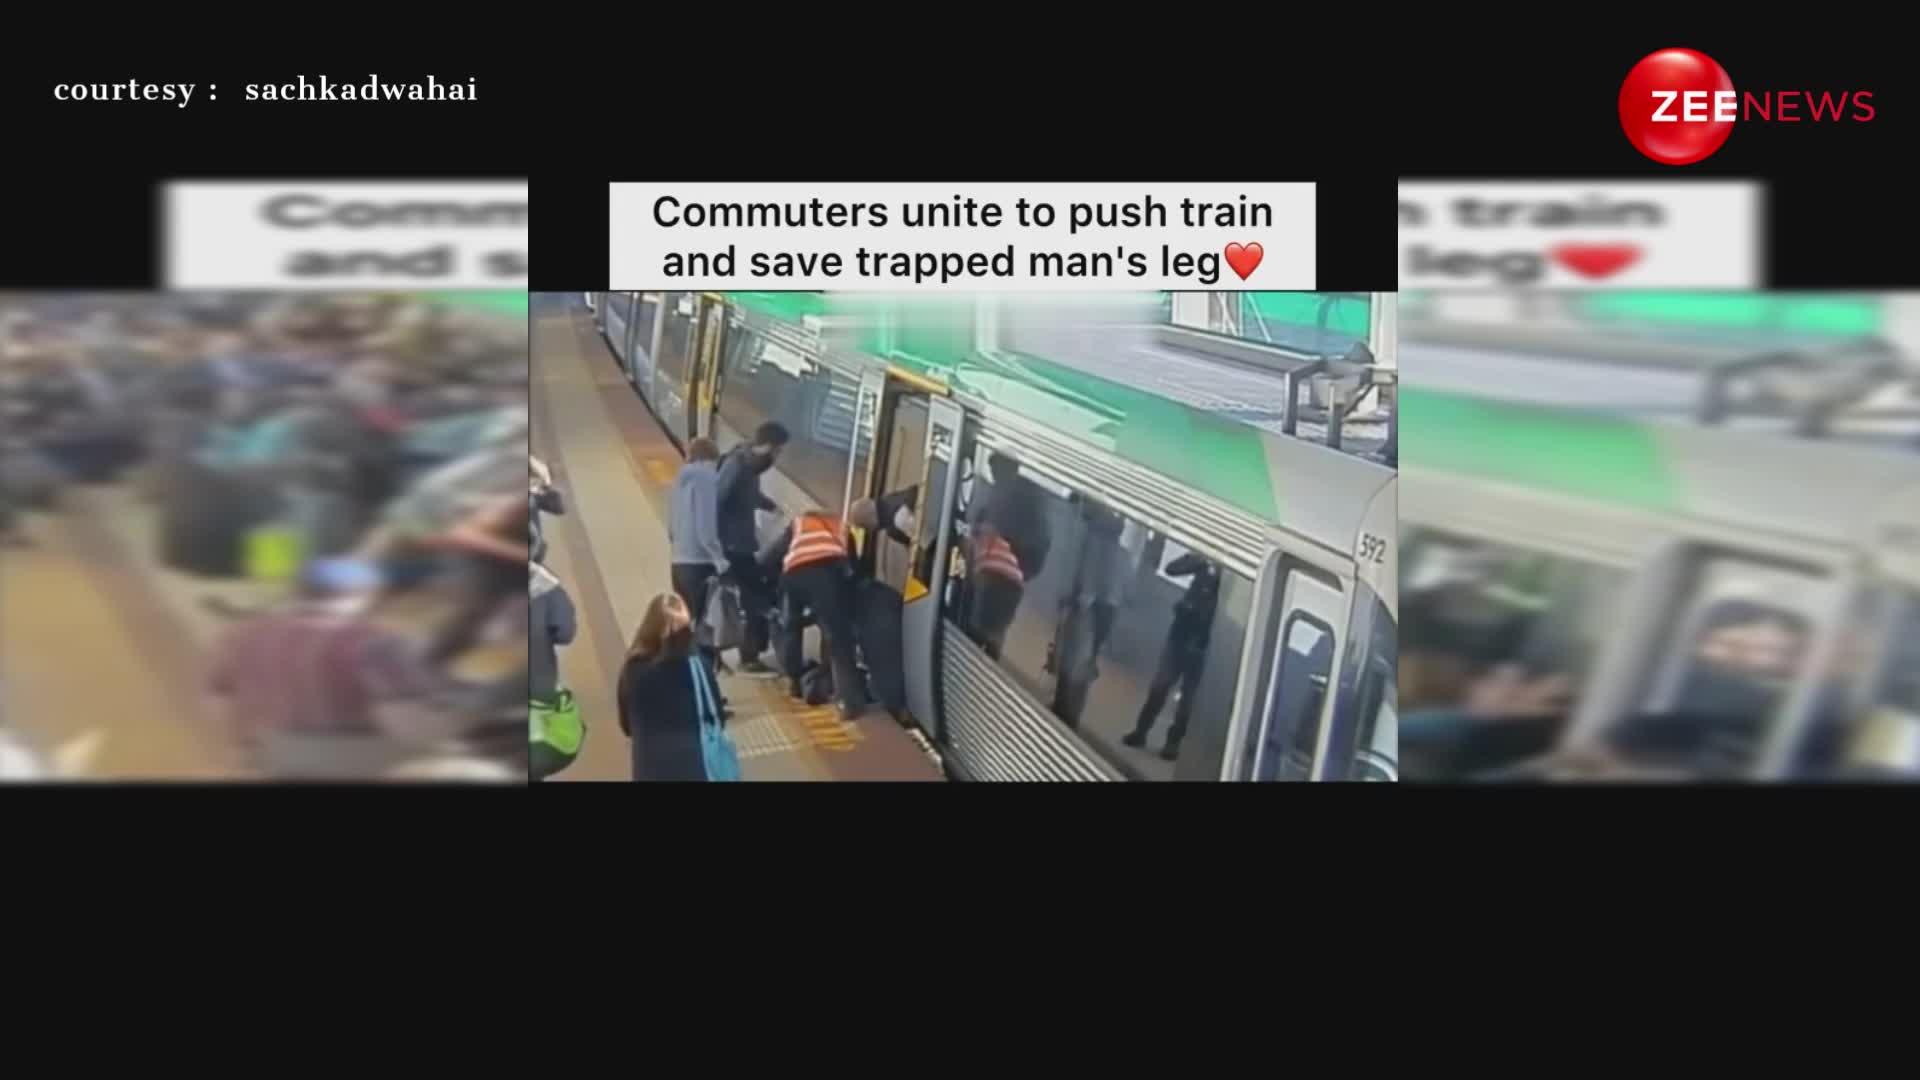 ट्रेन में यात्री का पैर फंसा तो लोगों ने मिलकर कर दिया कमाल, इंटरनेट पर वायरल हुआ दिल छूने वाला वीडियो